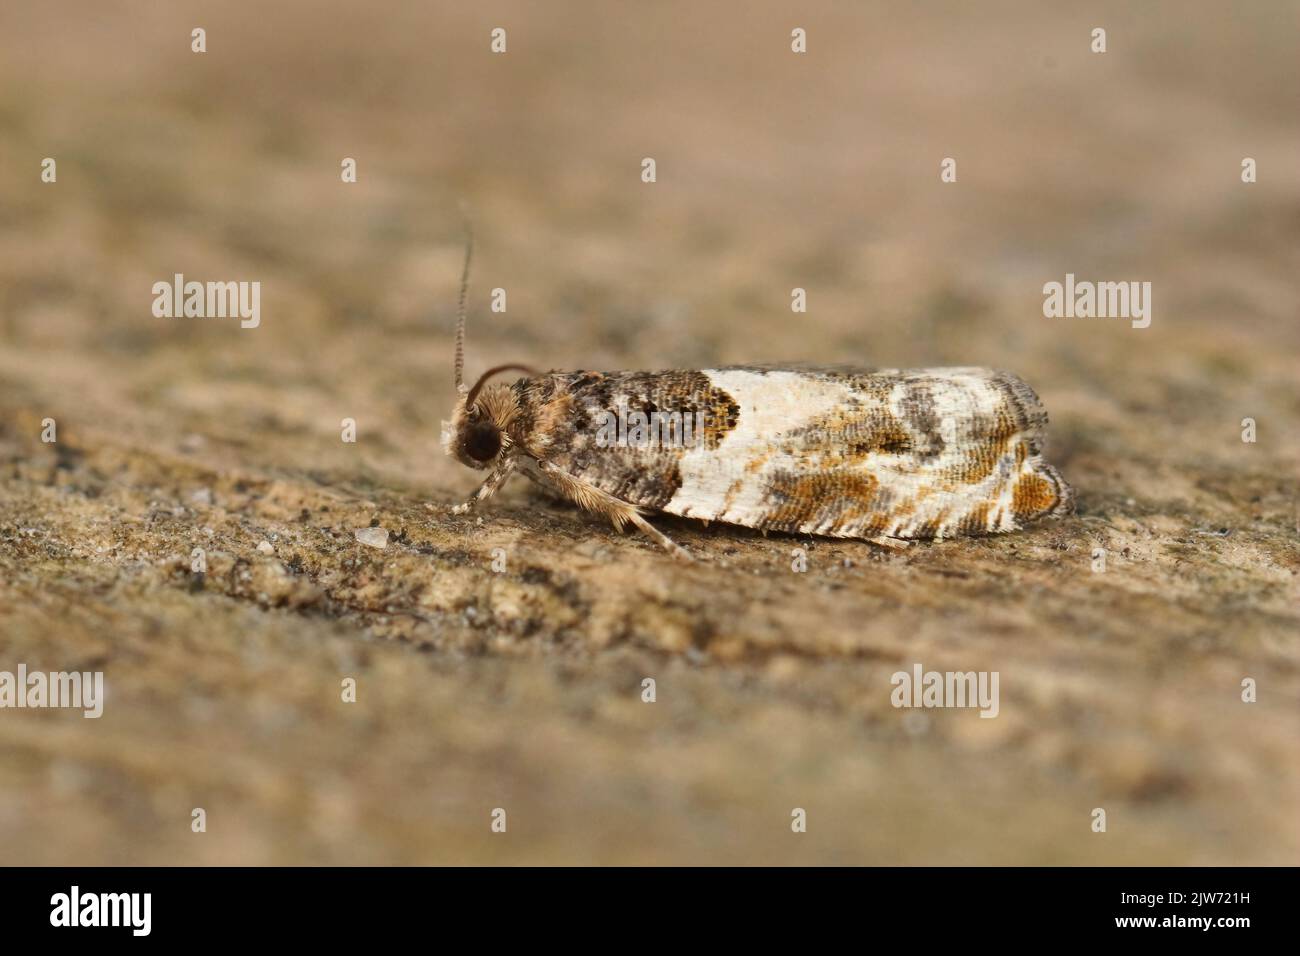 Eine Nahaufnahme eines kleinen getarnte Schussmotten (Gypsonoma dealbana), der auf einer braunen Oberfläche thront Stockfoto